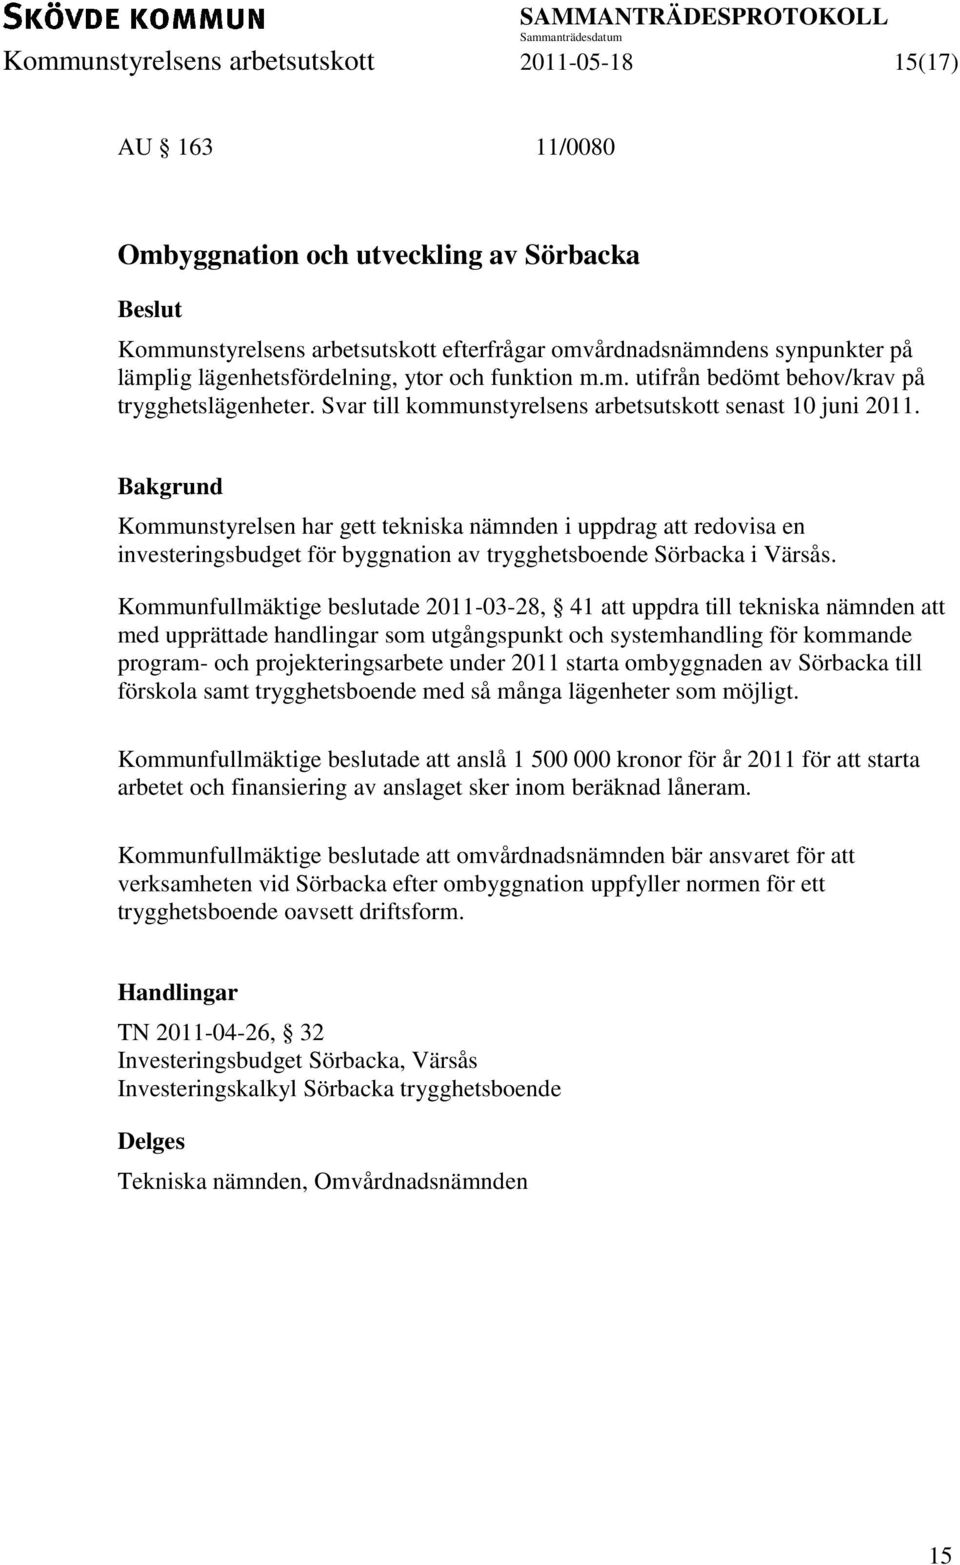 Kommunstyrelsen har gett tekniska nämnden i uppdrag att redovisa en investeringsbudget för byggnation av trygghetsboende Sörbacka i Värsås.